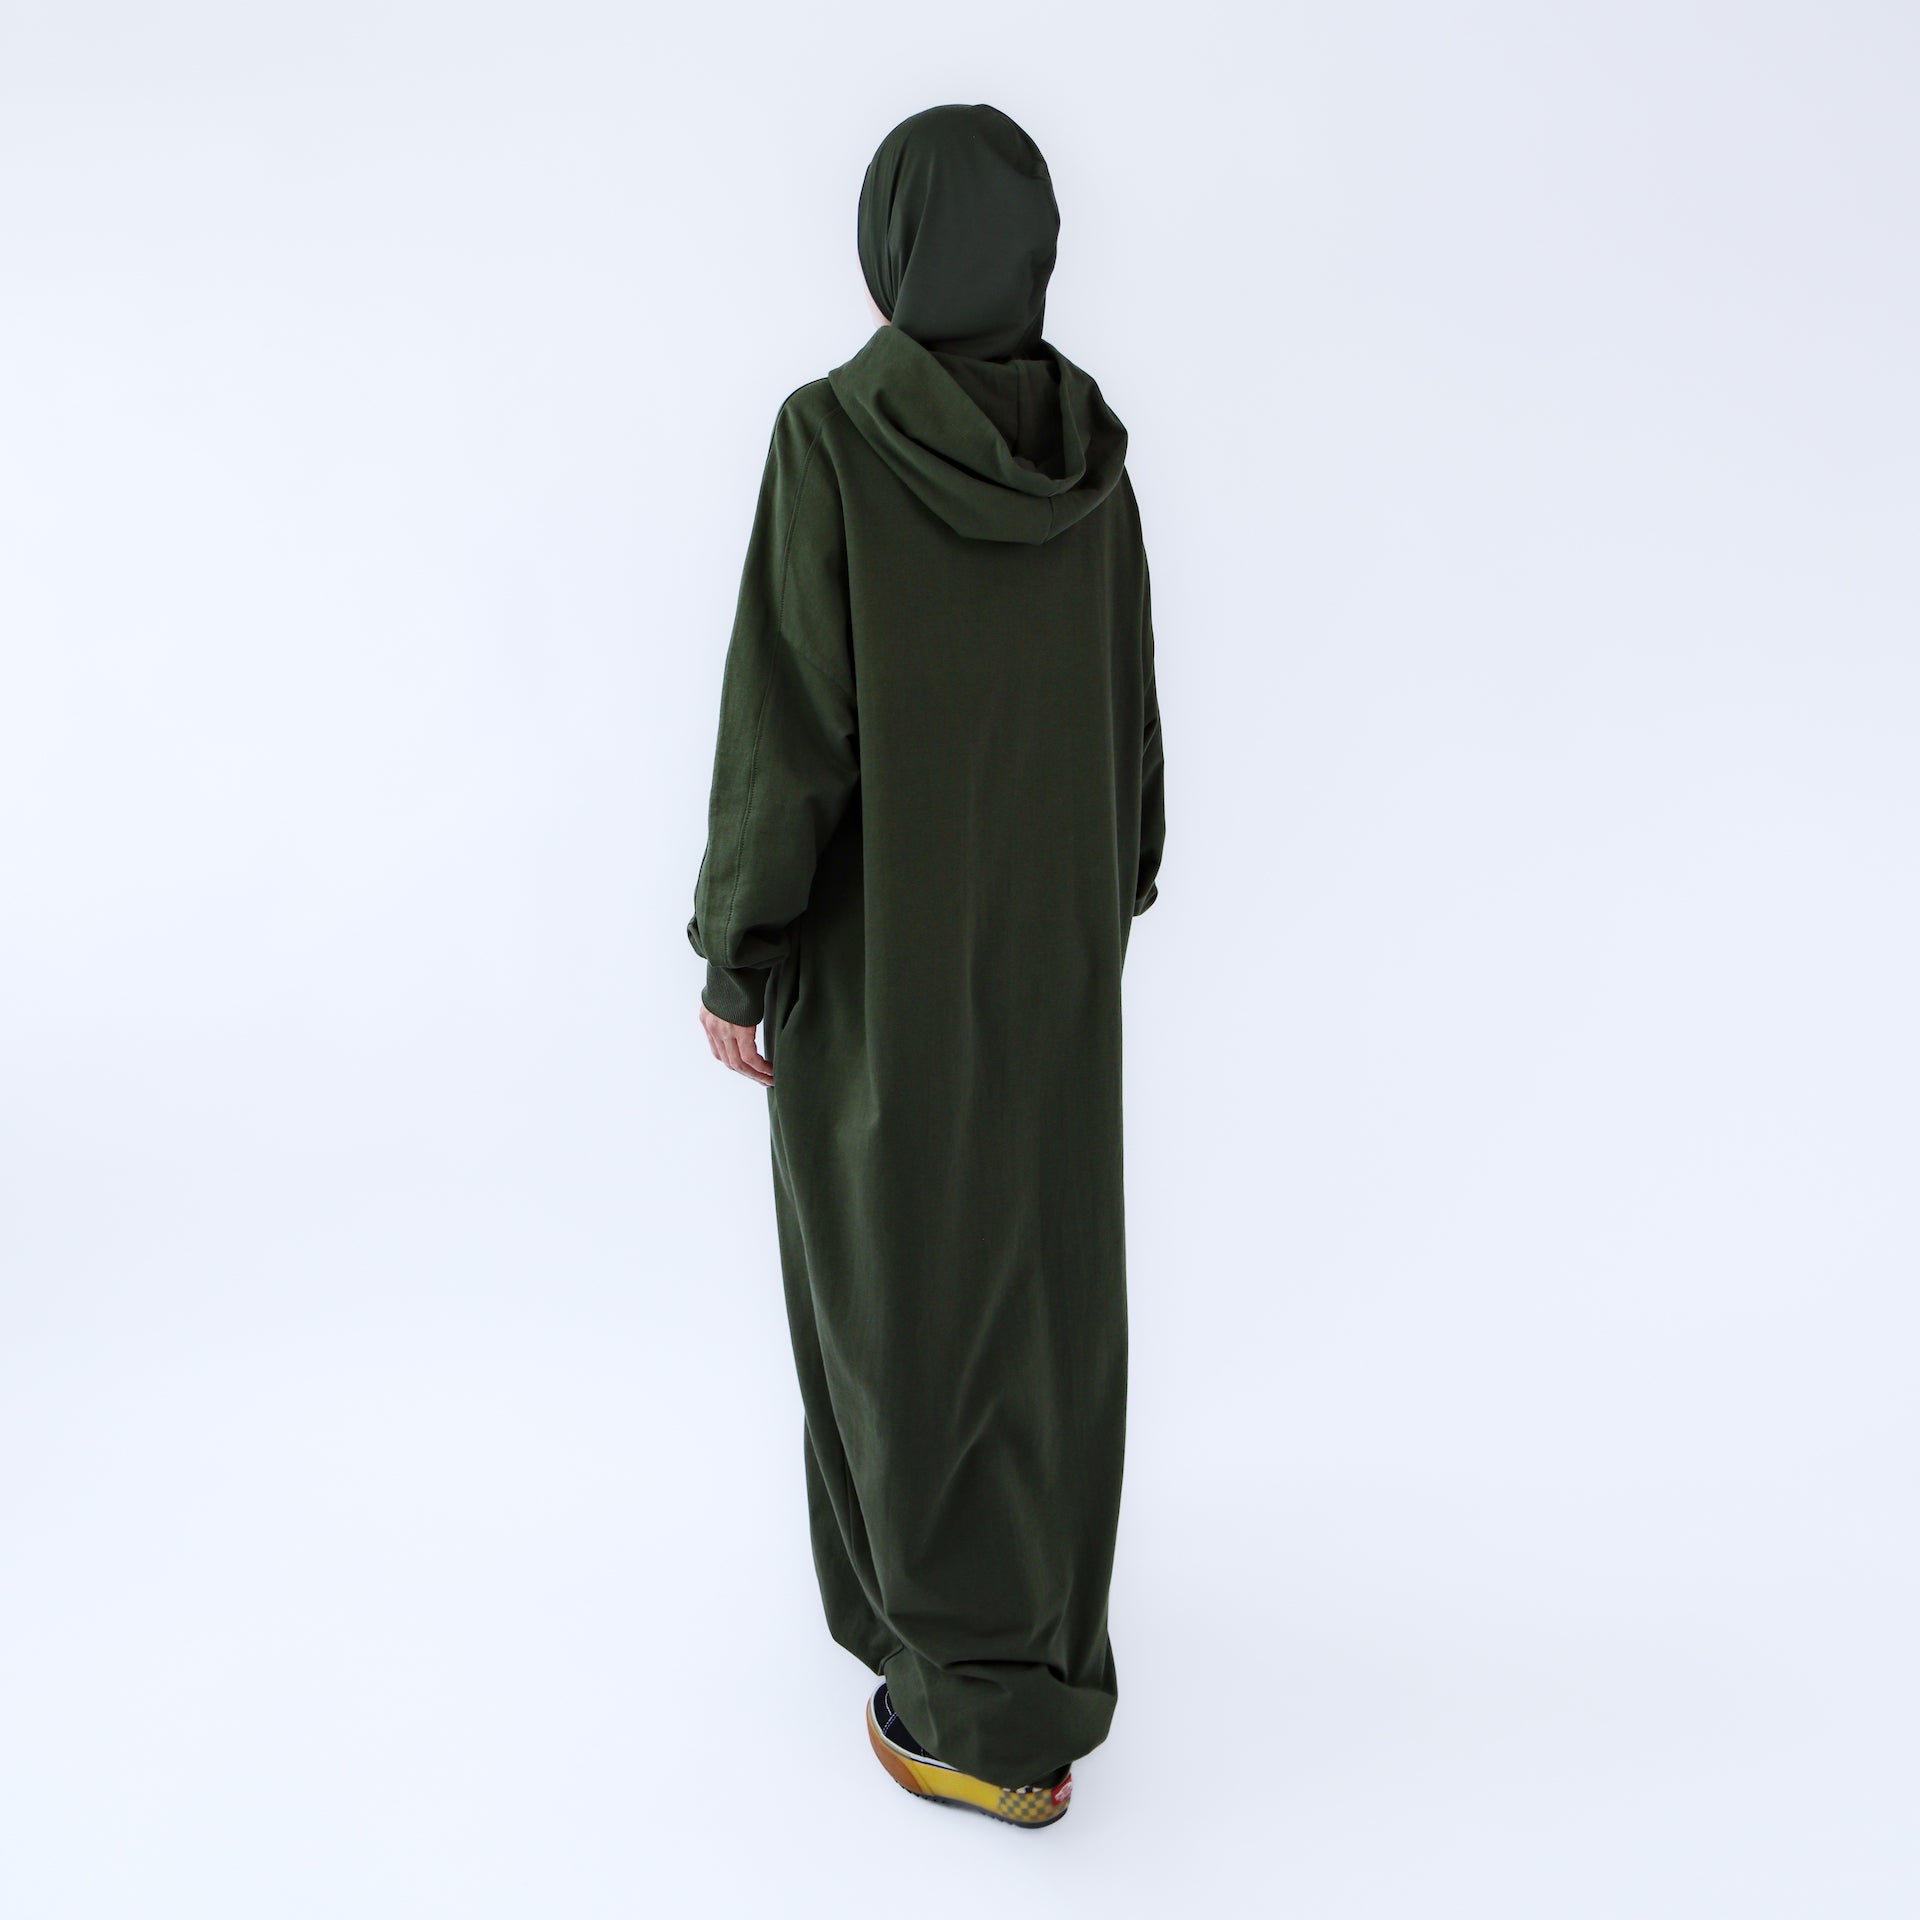 Muslim dress for women "Khaki Oasis" abaya dress style 2